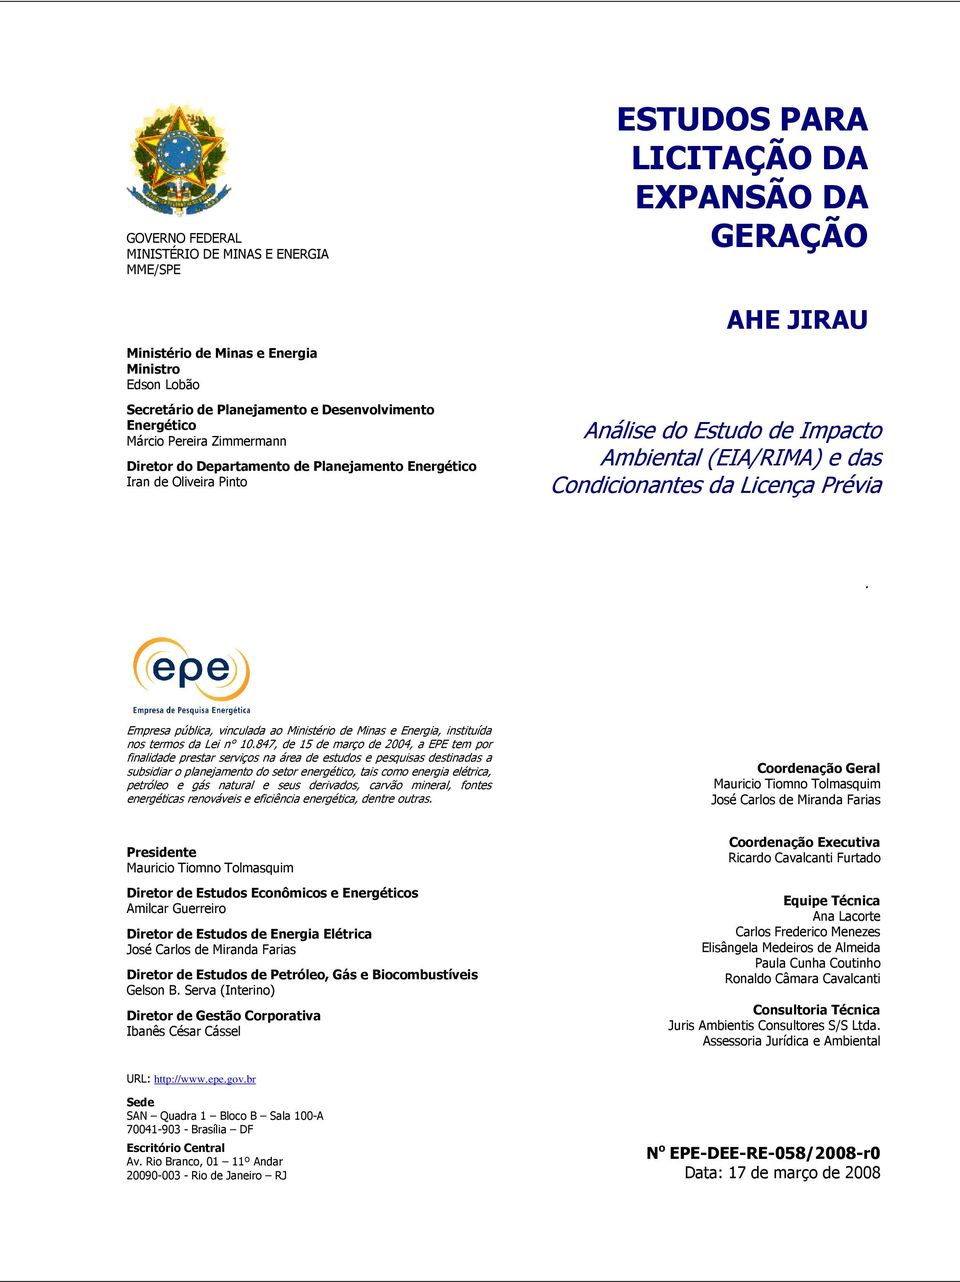 (EIA/RIMA) e das Condicionantes da Licença Prévia. Empresa pública, vinculada ao Ministério de Minas e Energia, instituída nos termos da Lei n 10.